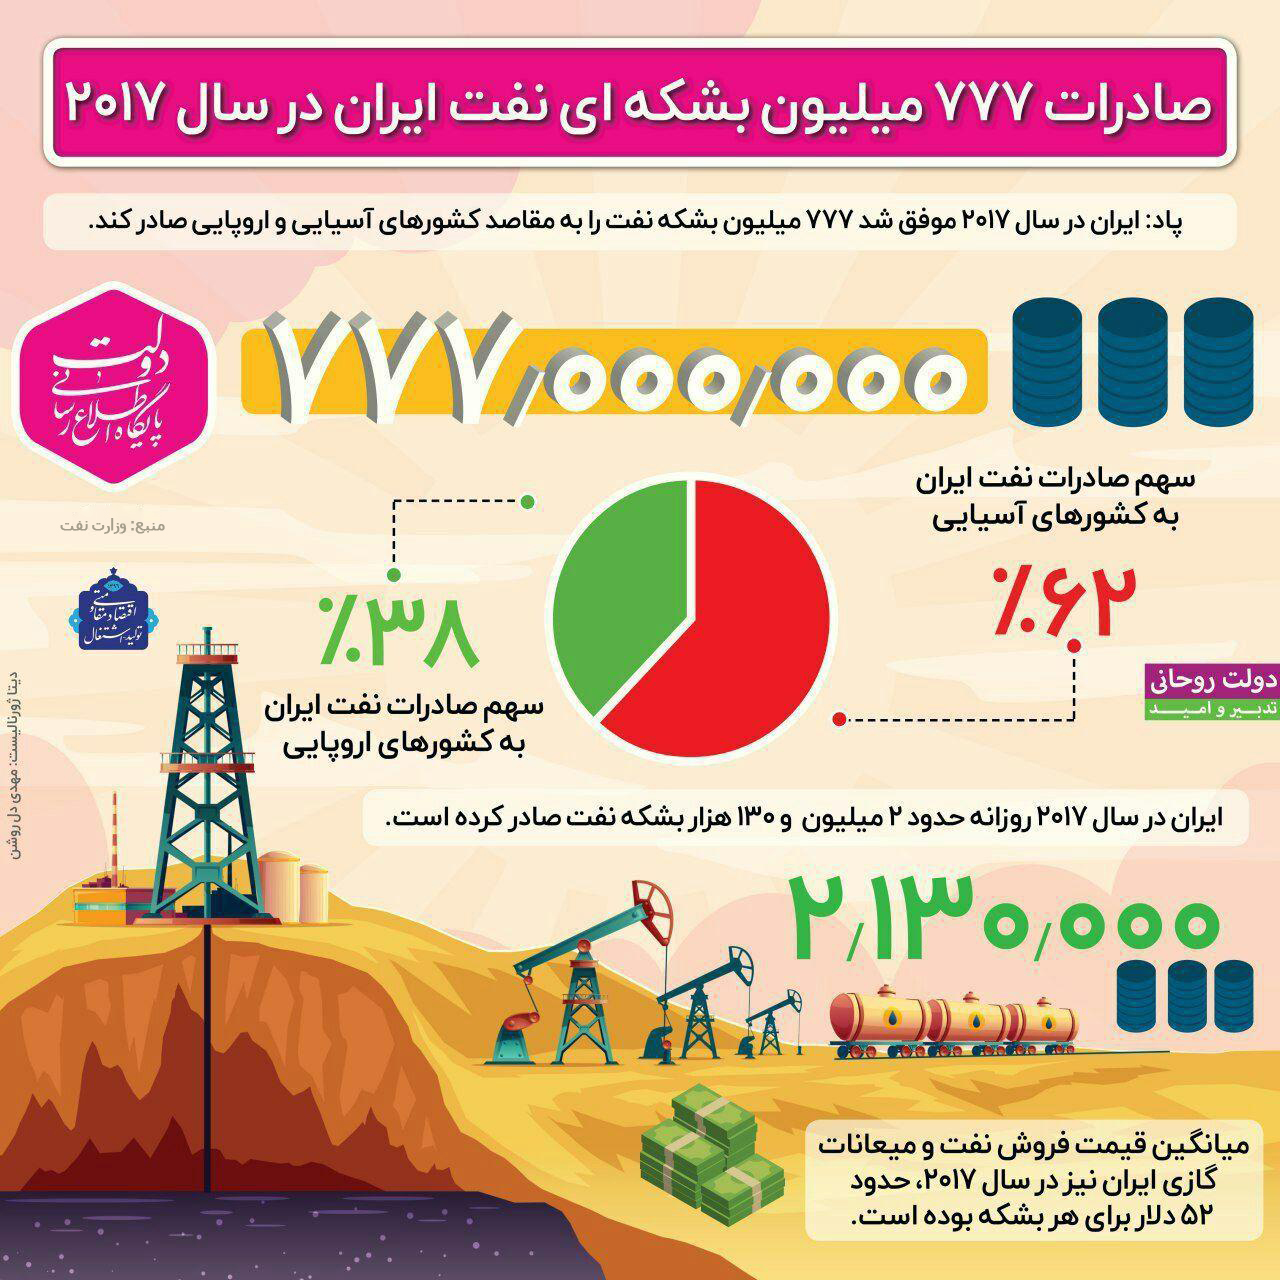 صادرات 777 میلیون بشکه ای نفت ایران در سال 2017